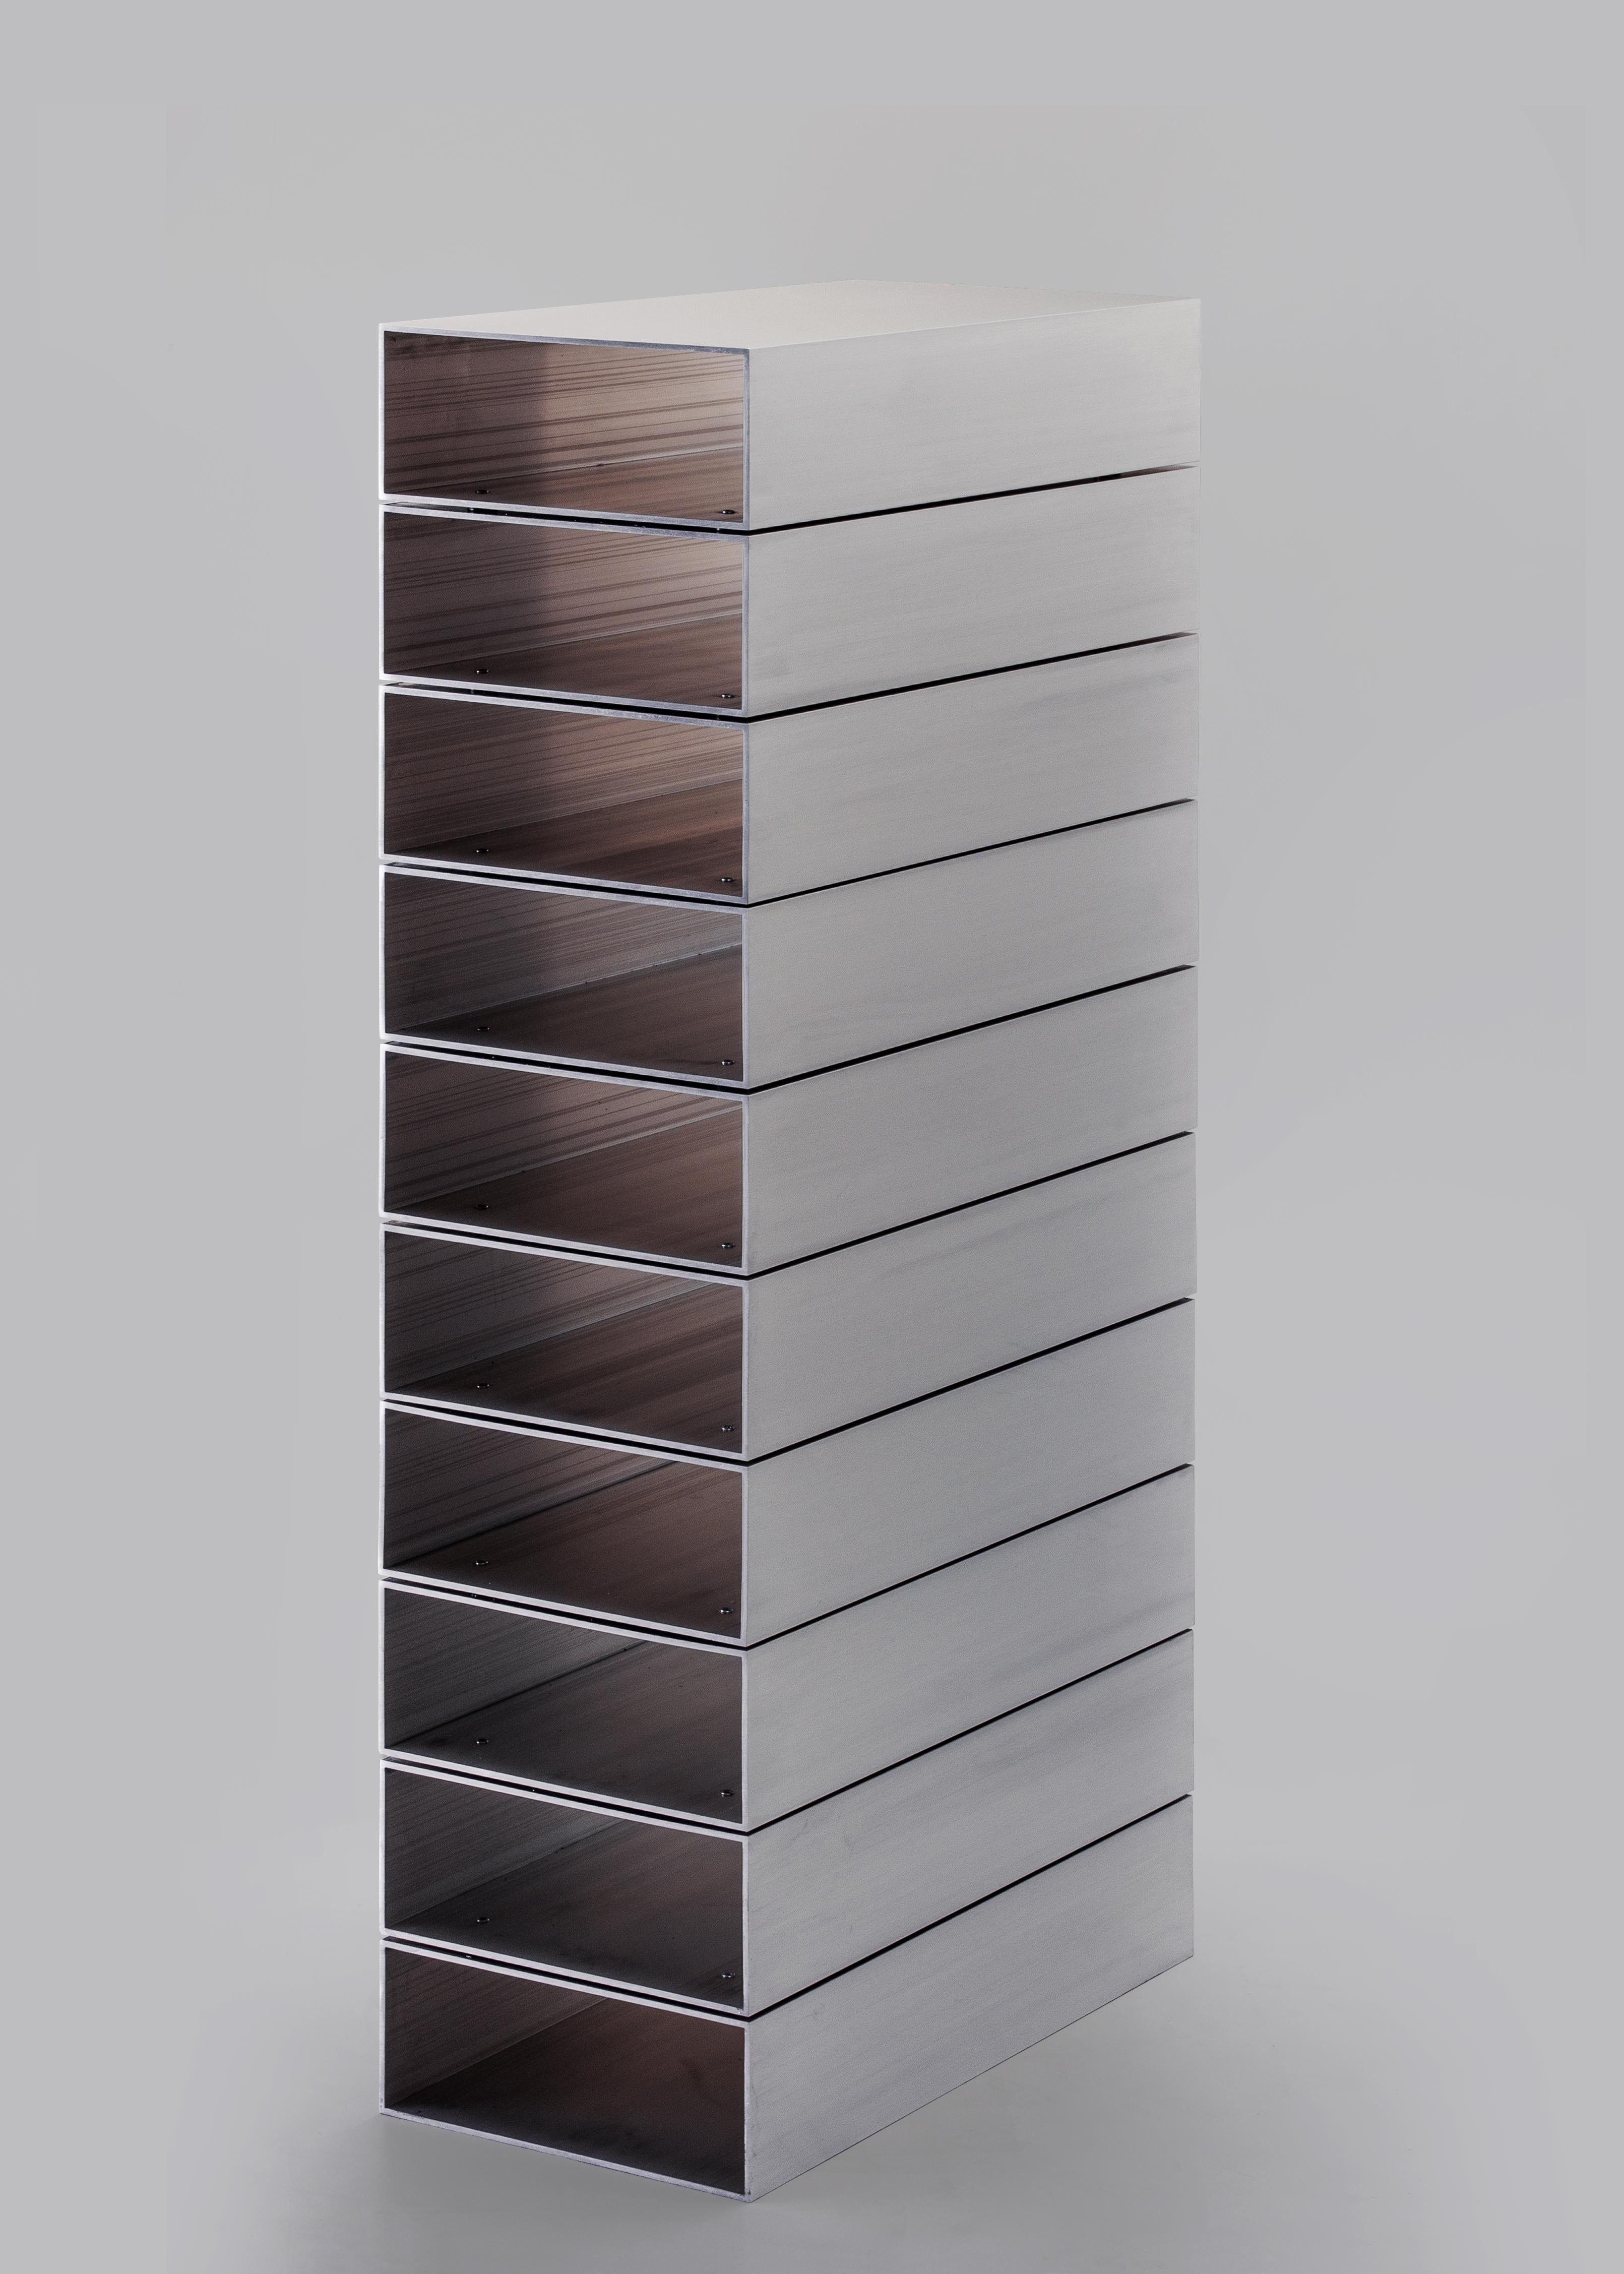 Das Stack-Regal ist ein absolutes Objekt. Die funktionale und skulpturale Form ergibt sich direkt aus den Systemen der Massenproduktion. Das Design basiert auf einem rechteckigen Aluminiumprofil, das in zehn gleiche Teile unterteilt ist. Die